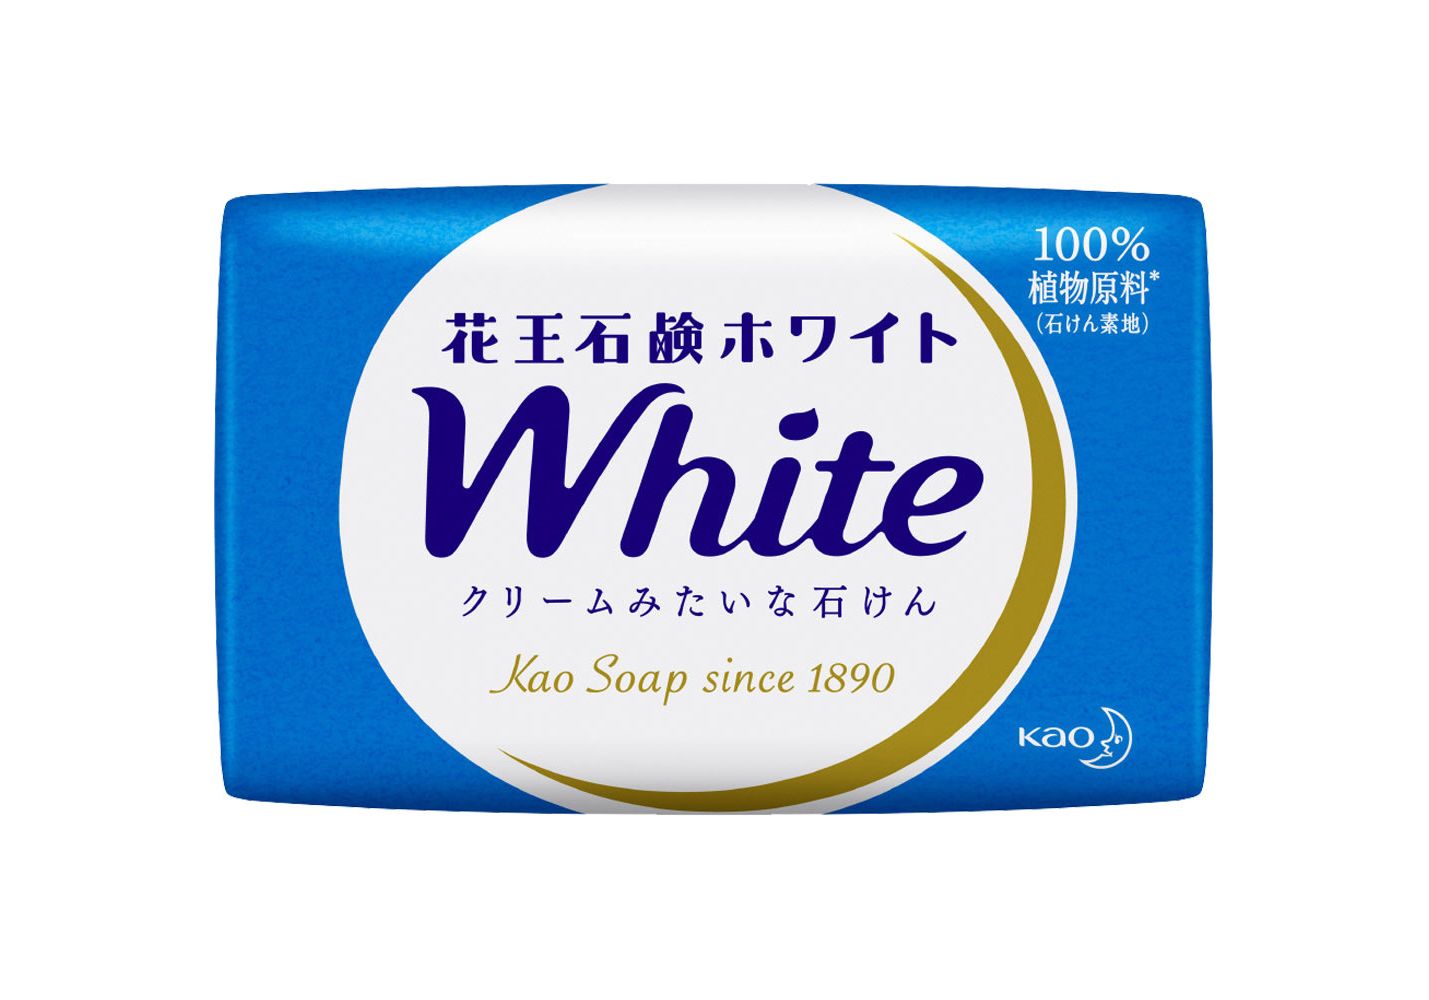 Увлажняющее крем-мыло для тела MegRhythm KAO White с ароматом белых цветов, 85г х 6шт. дом солнце мыло с ароматом можжевельника дыши легко 100